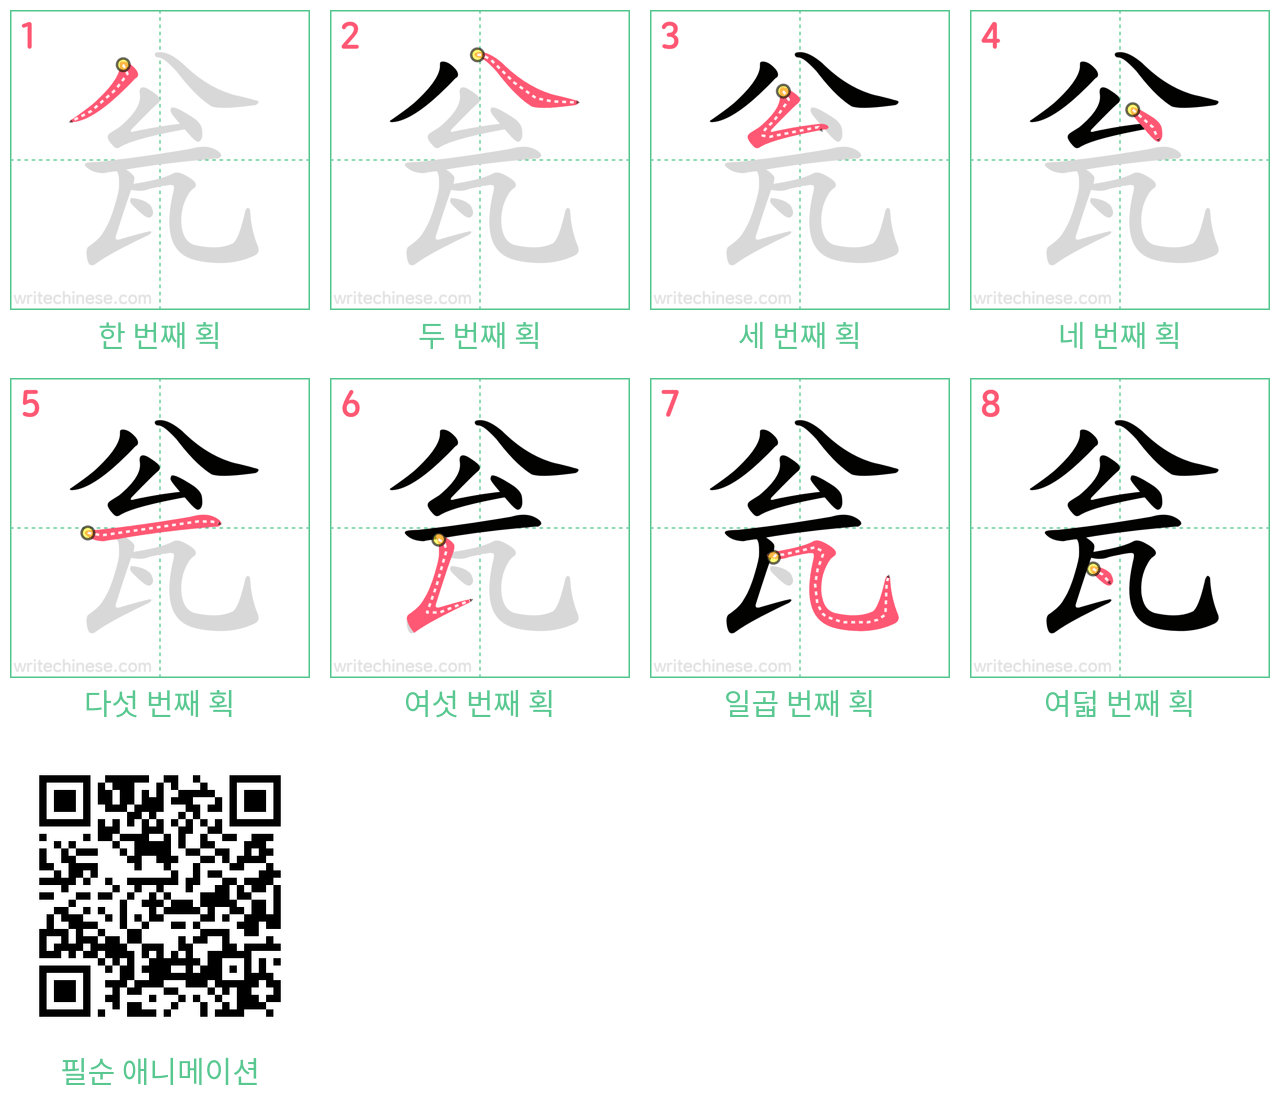 瓮 step-by-step stroke order diagrams